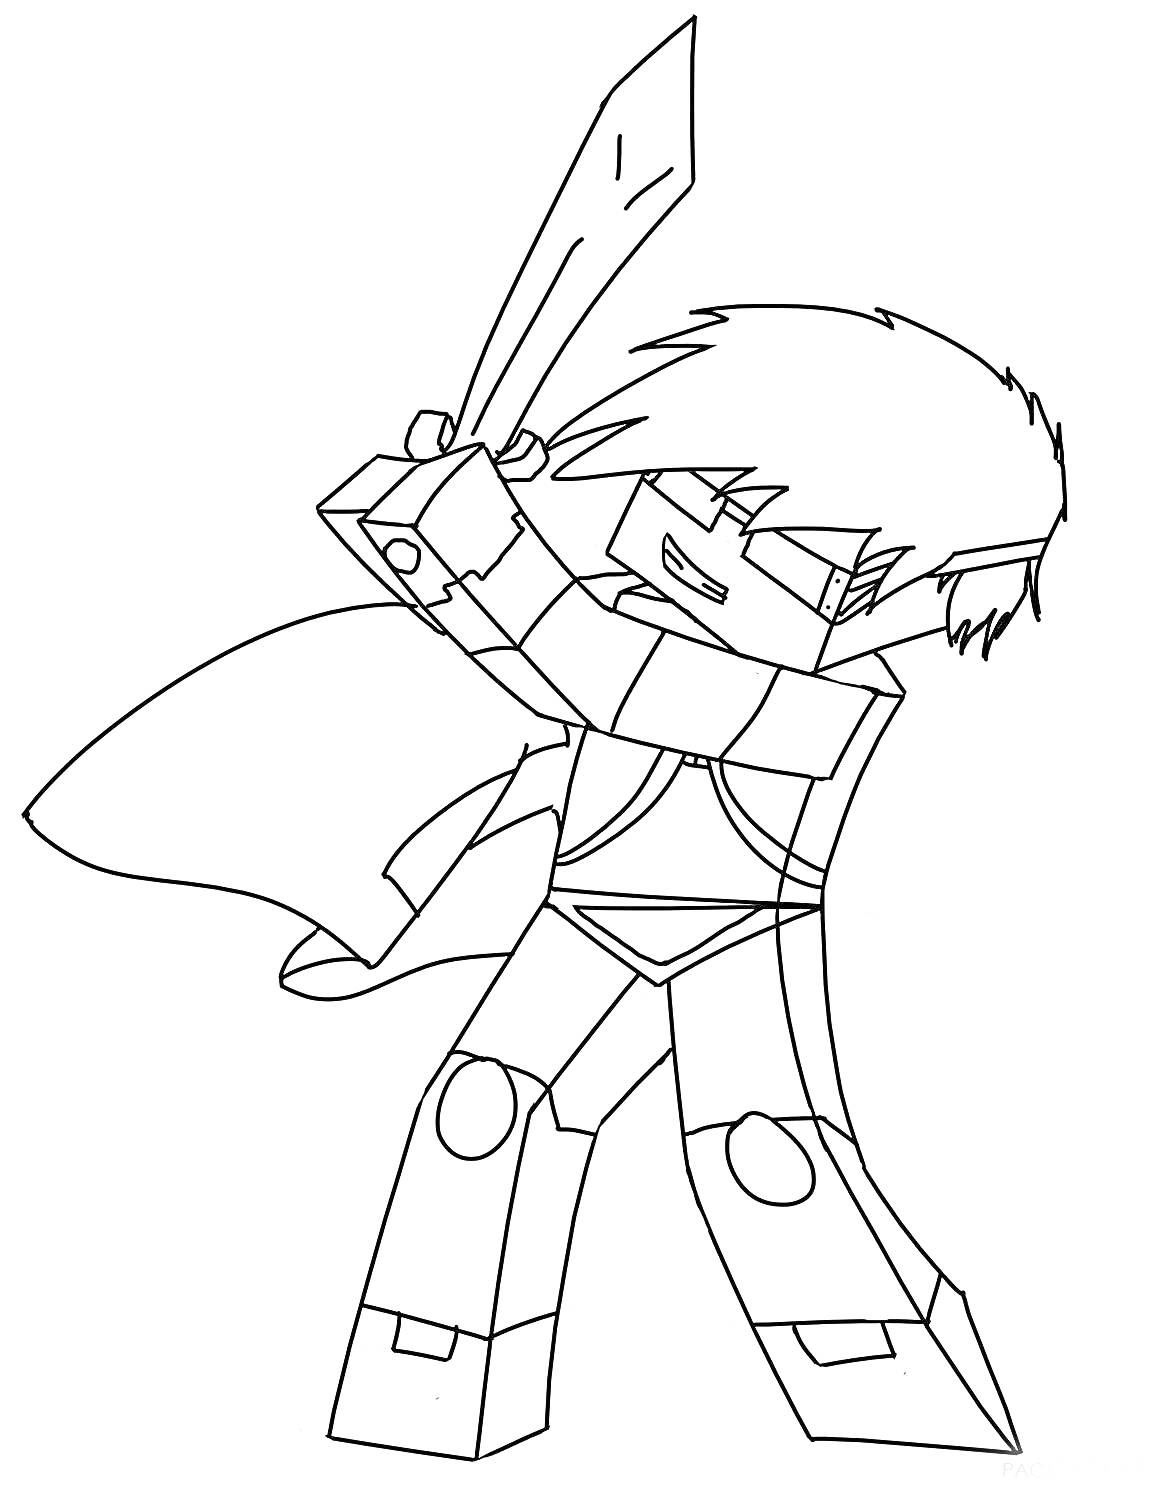 Персонаж Майнкрафт с мечом в руке и плащом